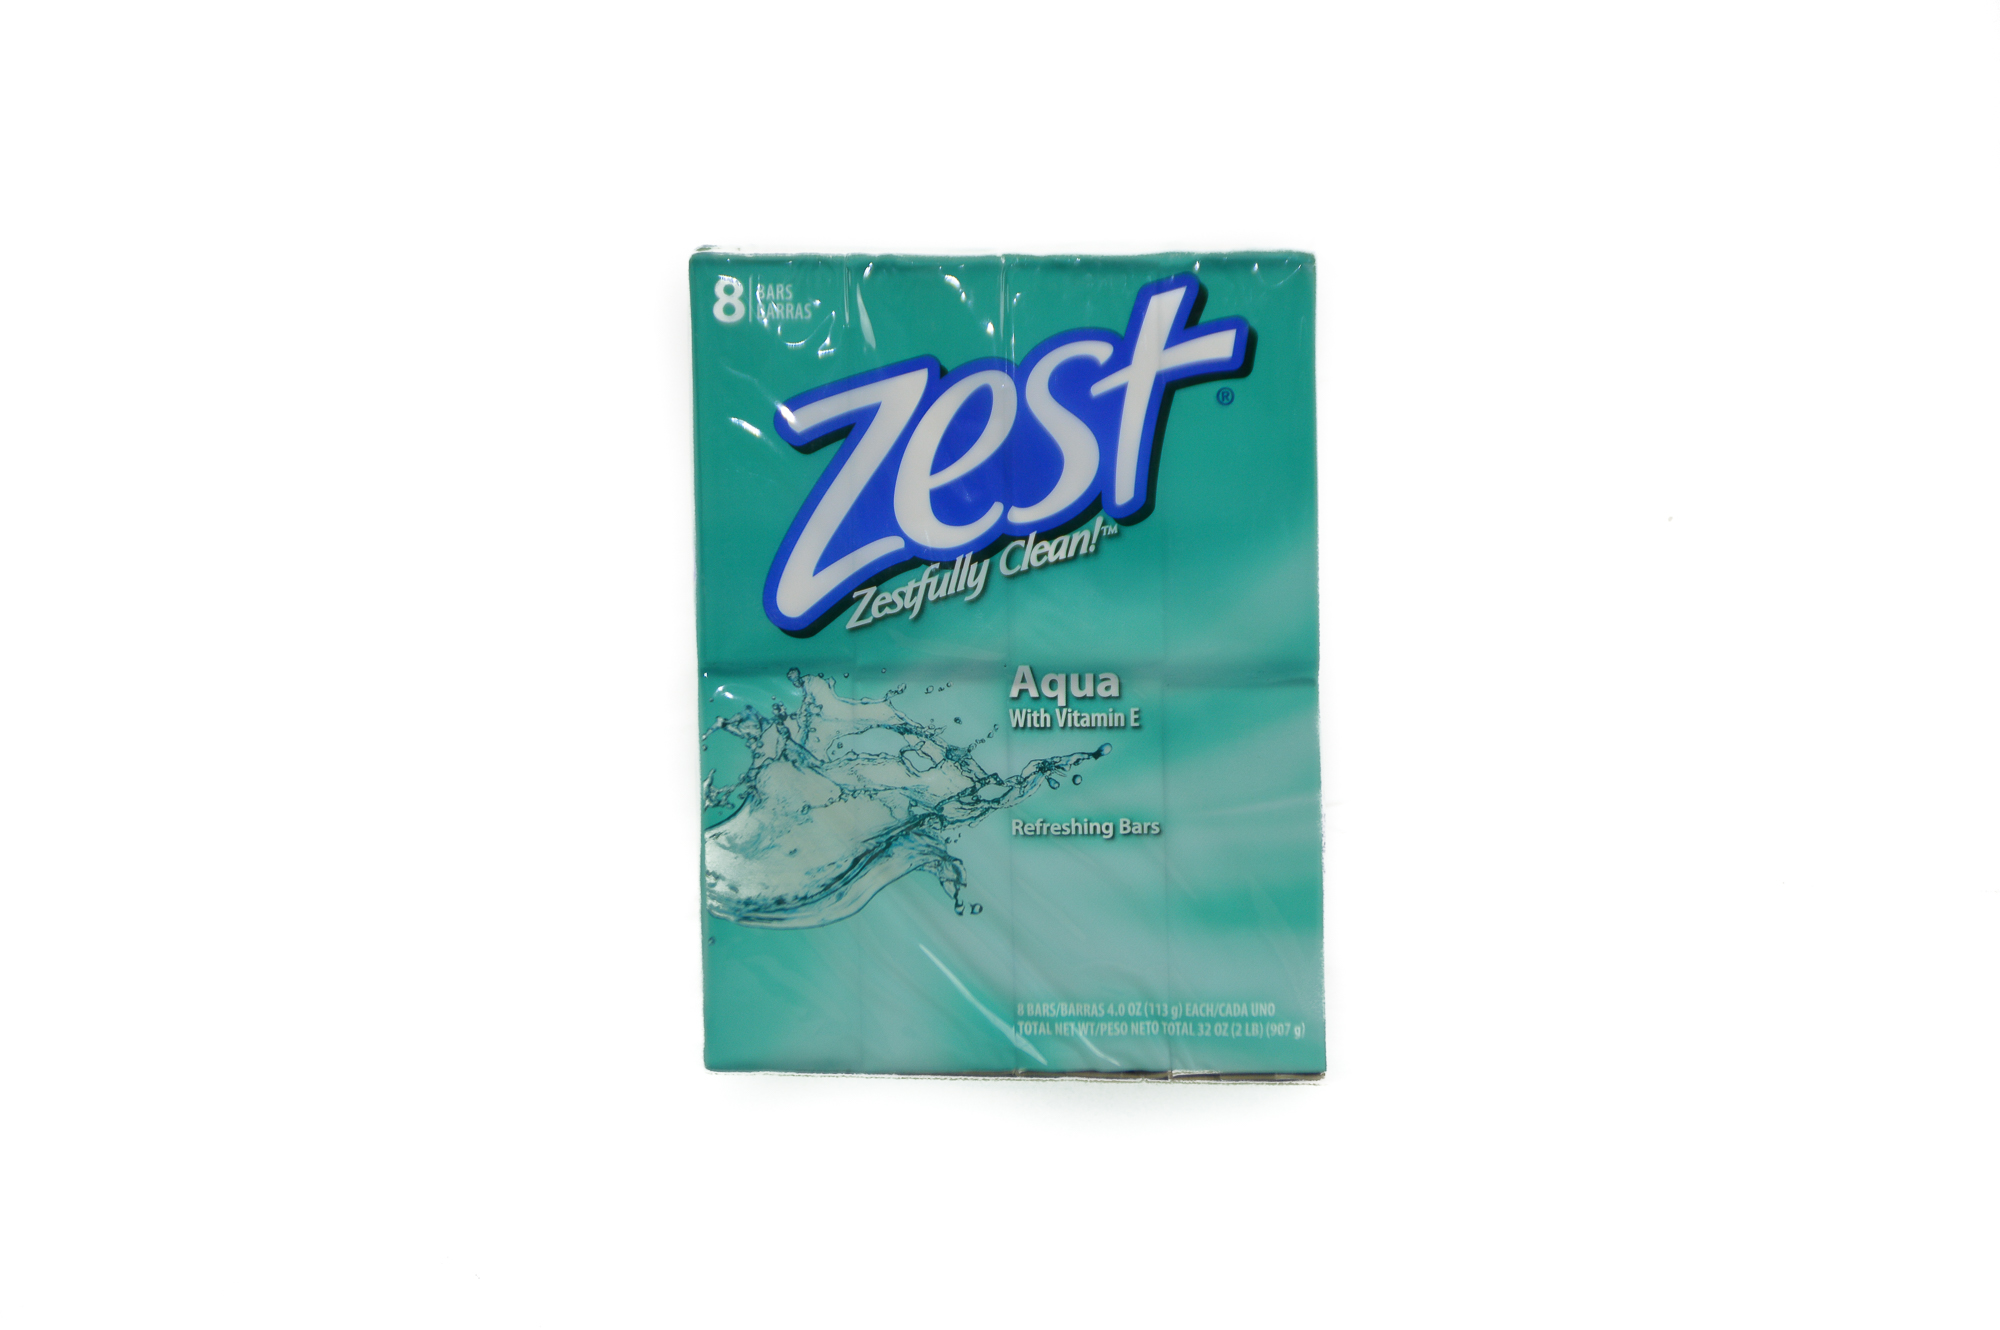 Zest Soap Pack (8 bars x 3.75 Oz)